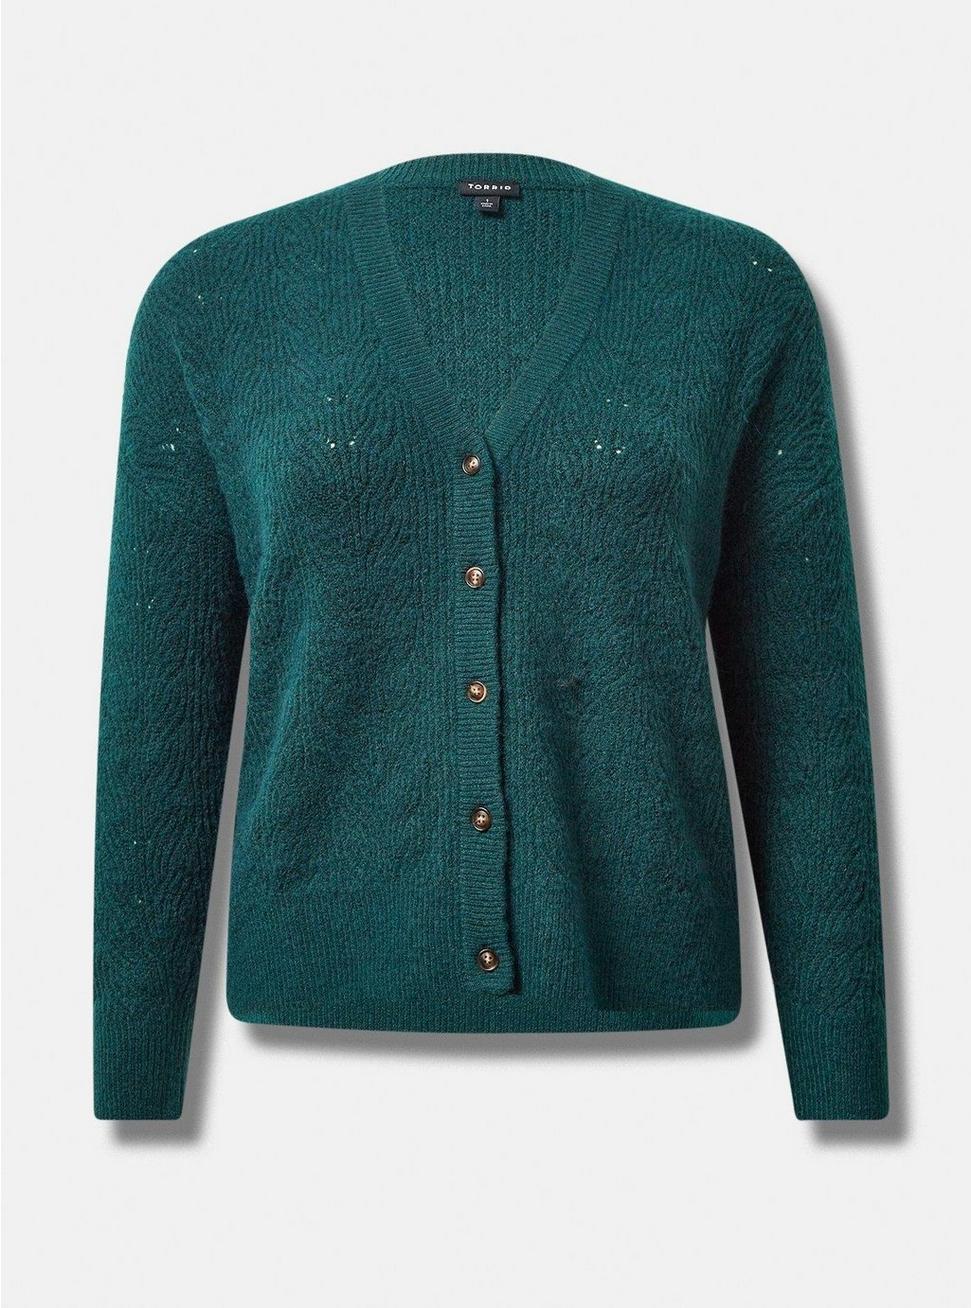 Vegan Cashmere Cardigan Sweater, BOTANICAL GARDEN, hi-res